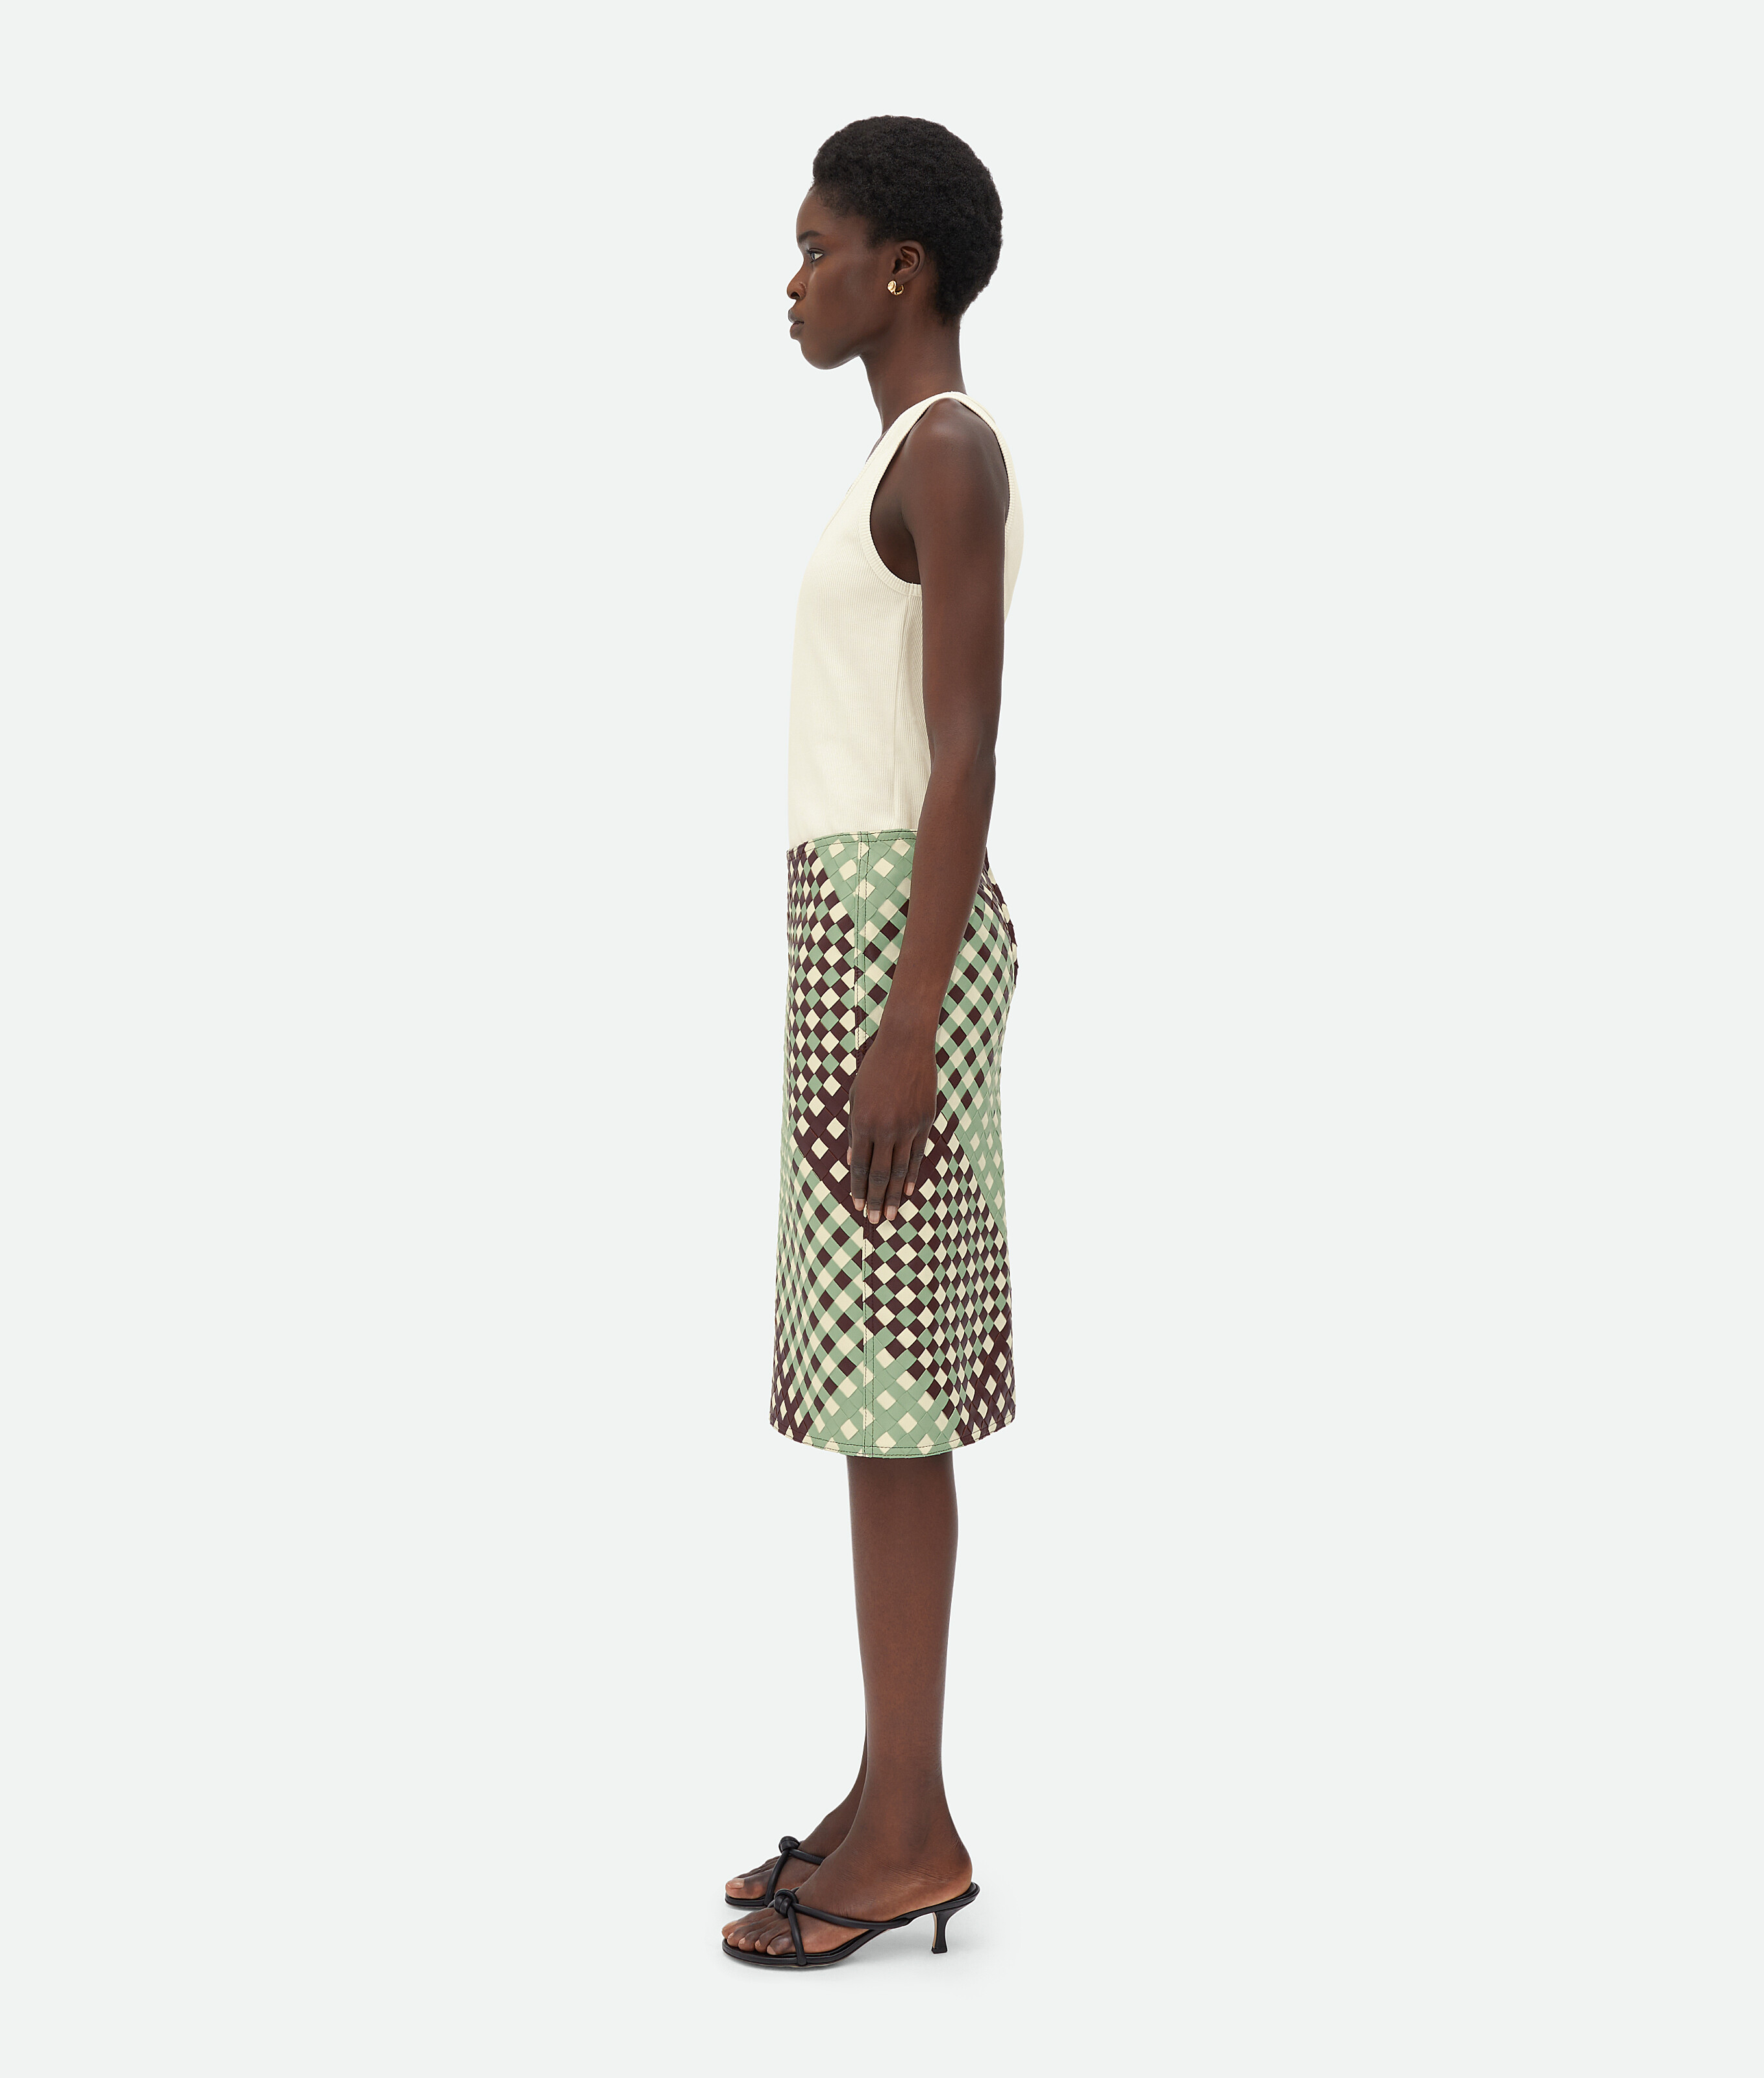 Shop Bottega Veneta Tricolor Intrecciato Leather Skirt In Green